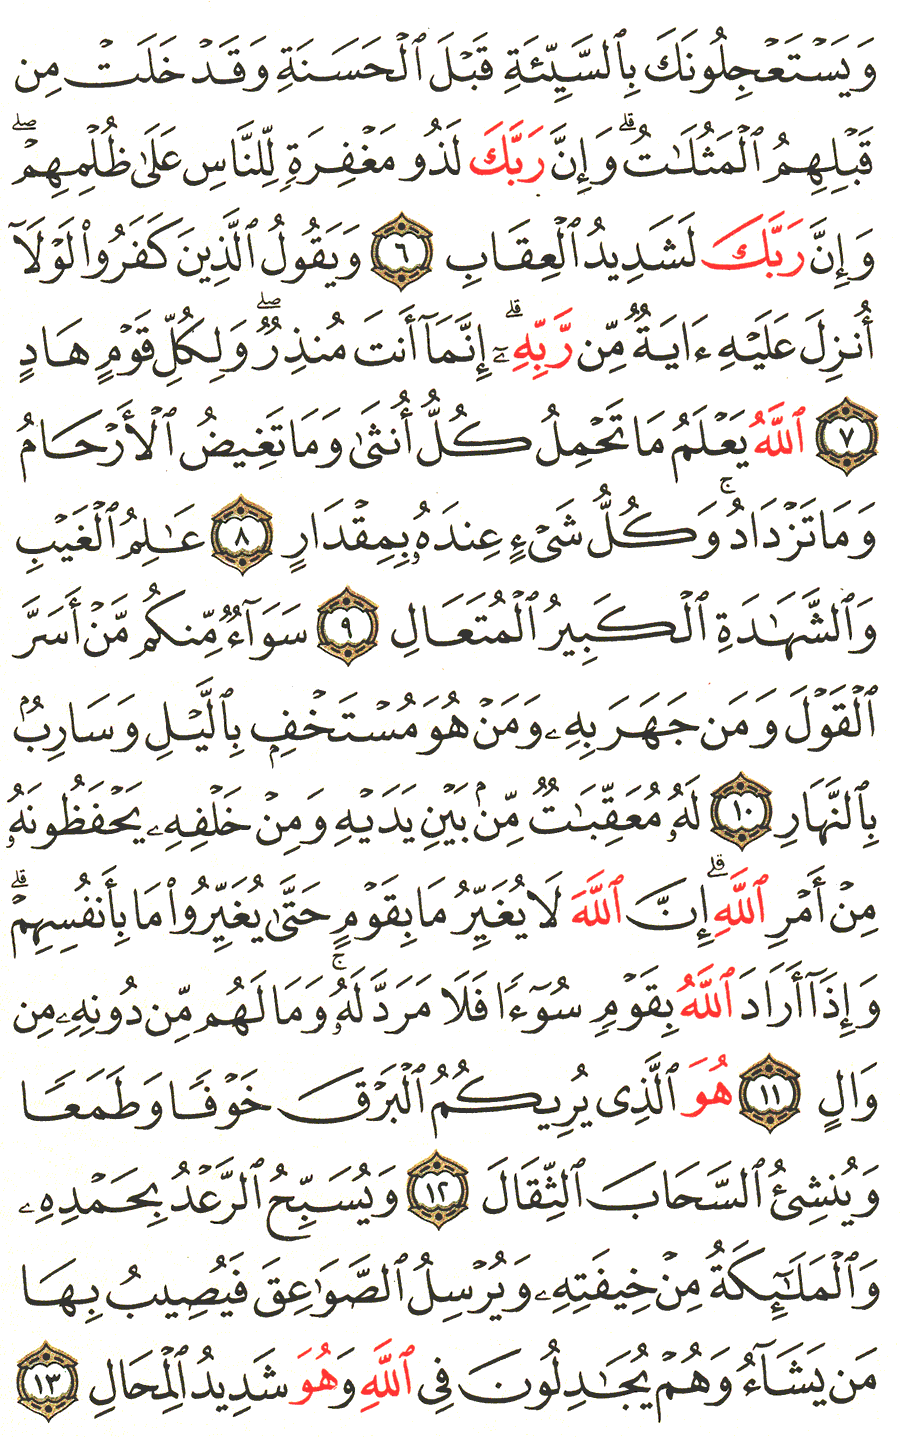 الصفحة رقم 250  من القرآن الكريم مكتوبة من المصحف